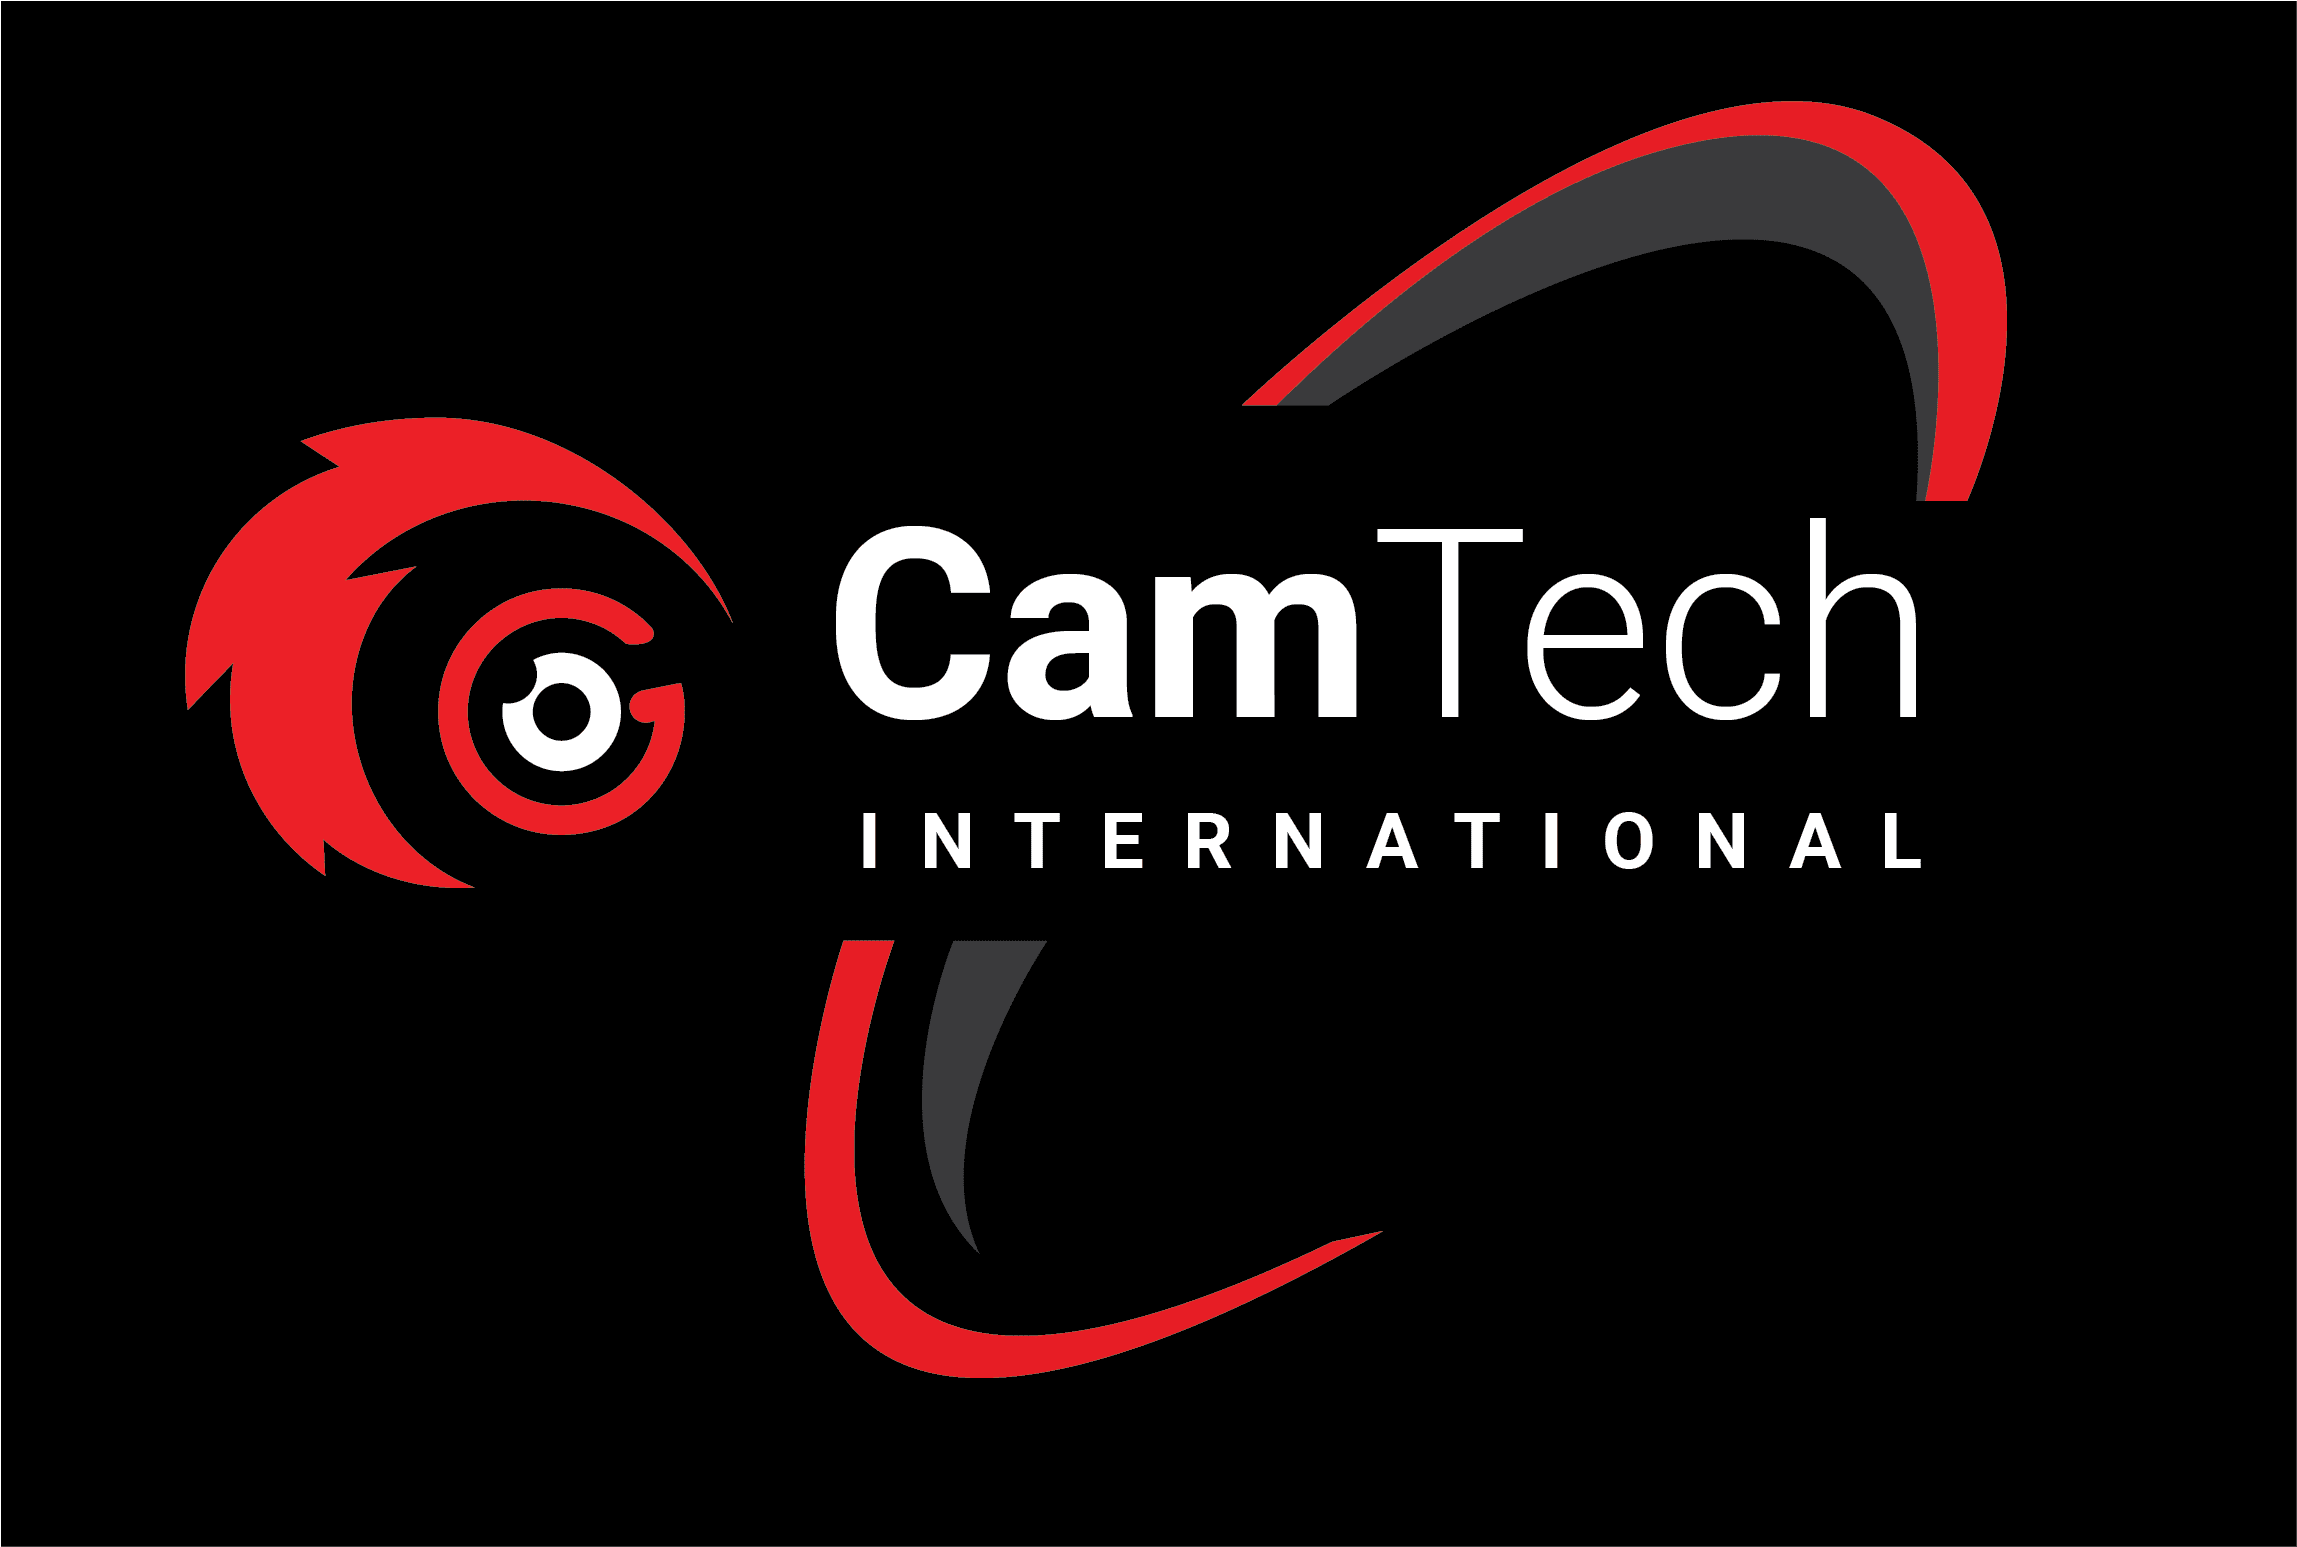 CamTech International